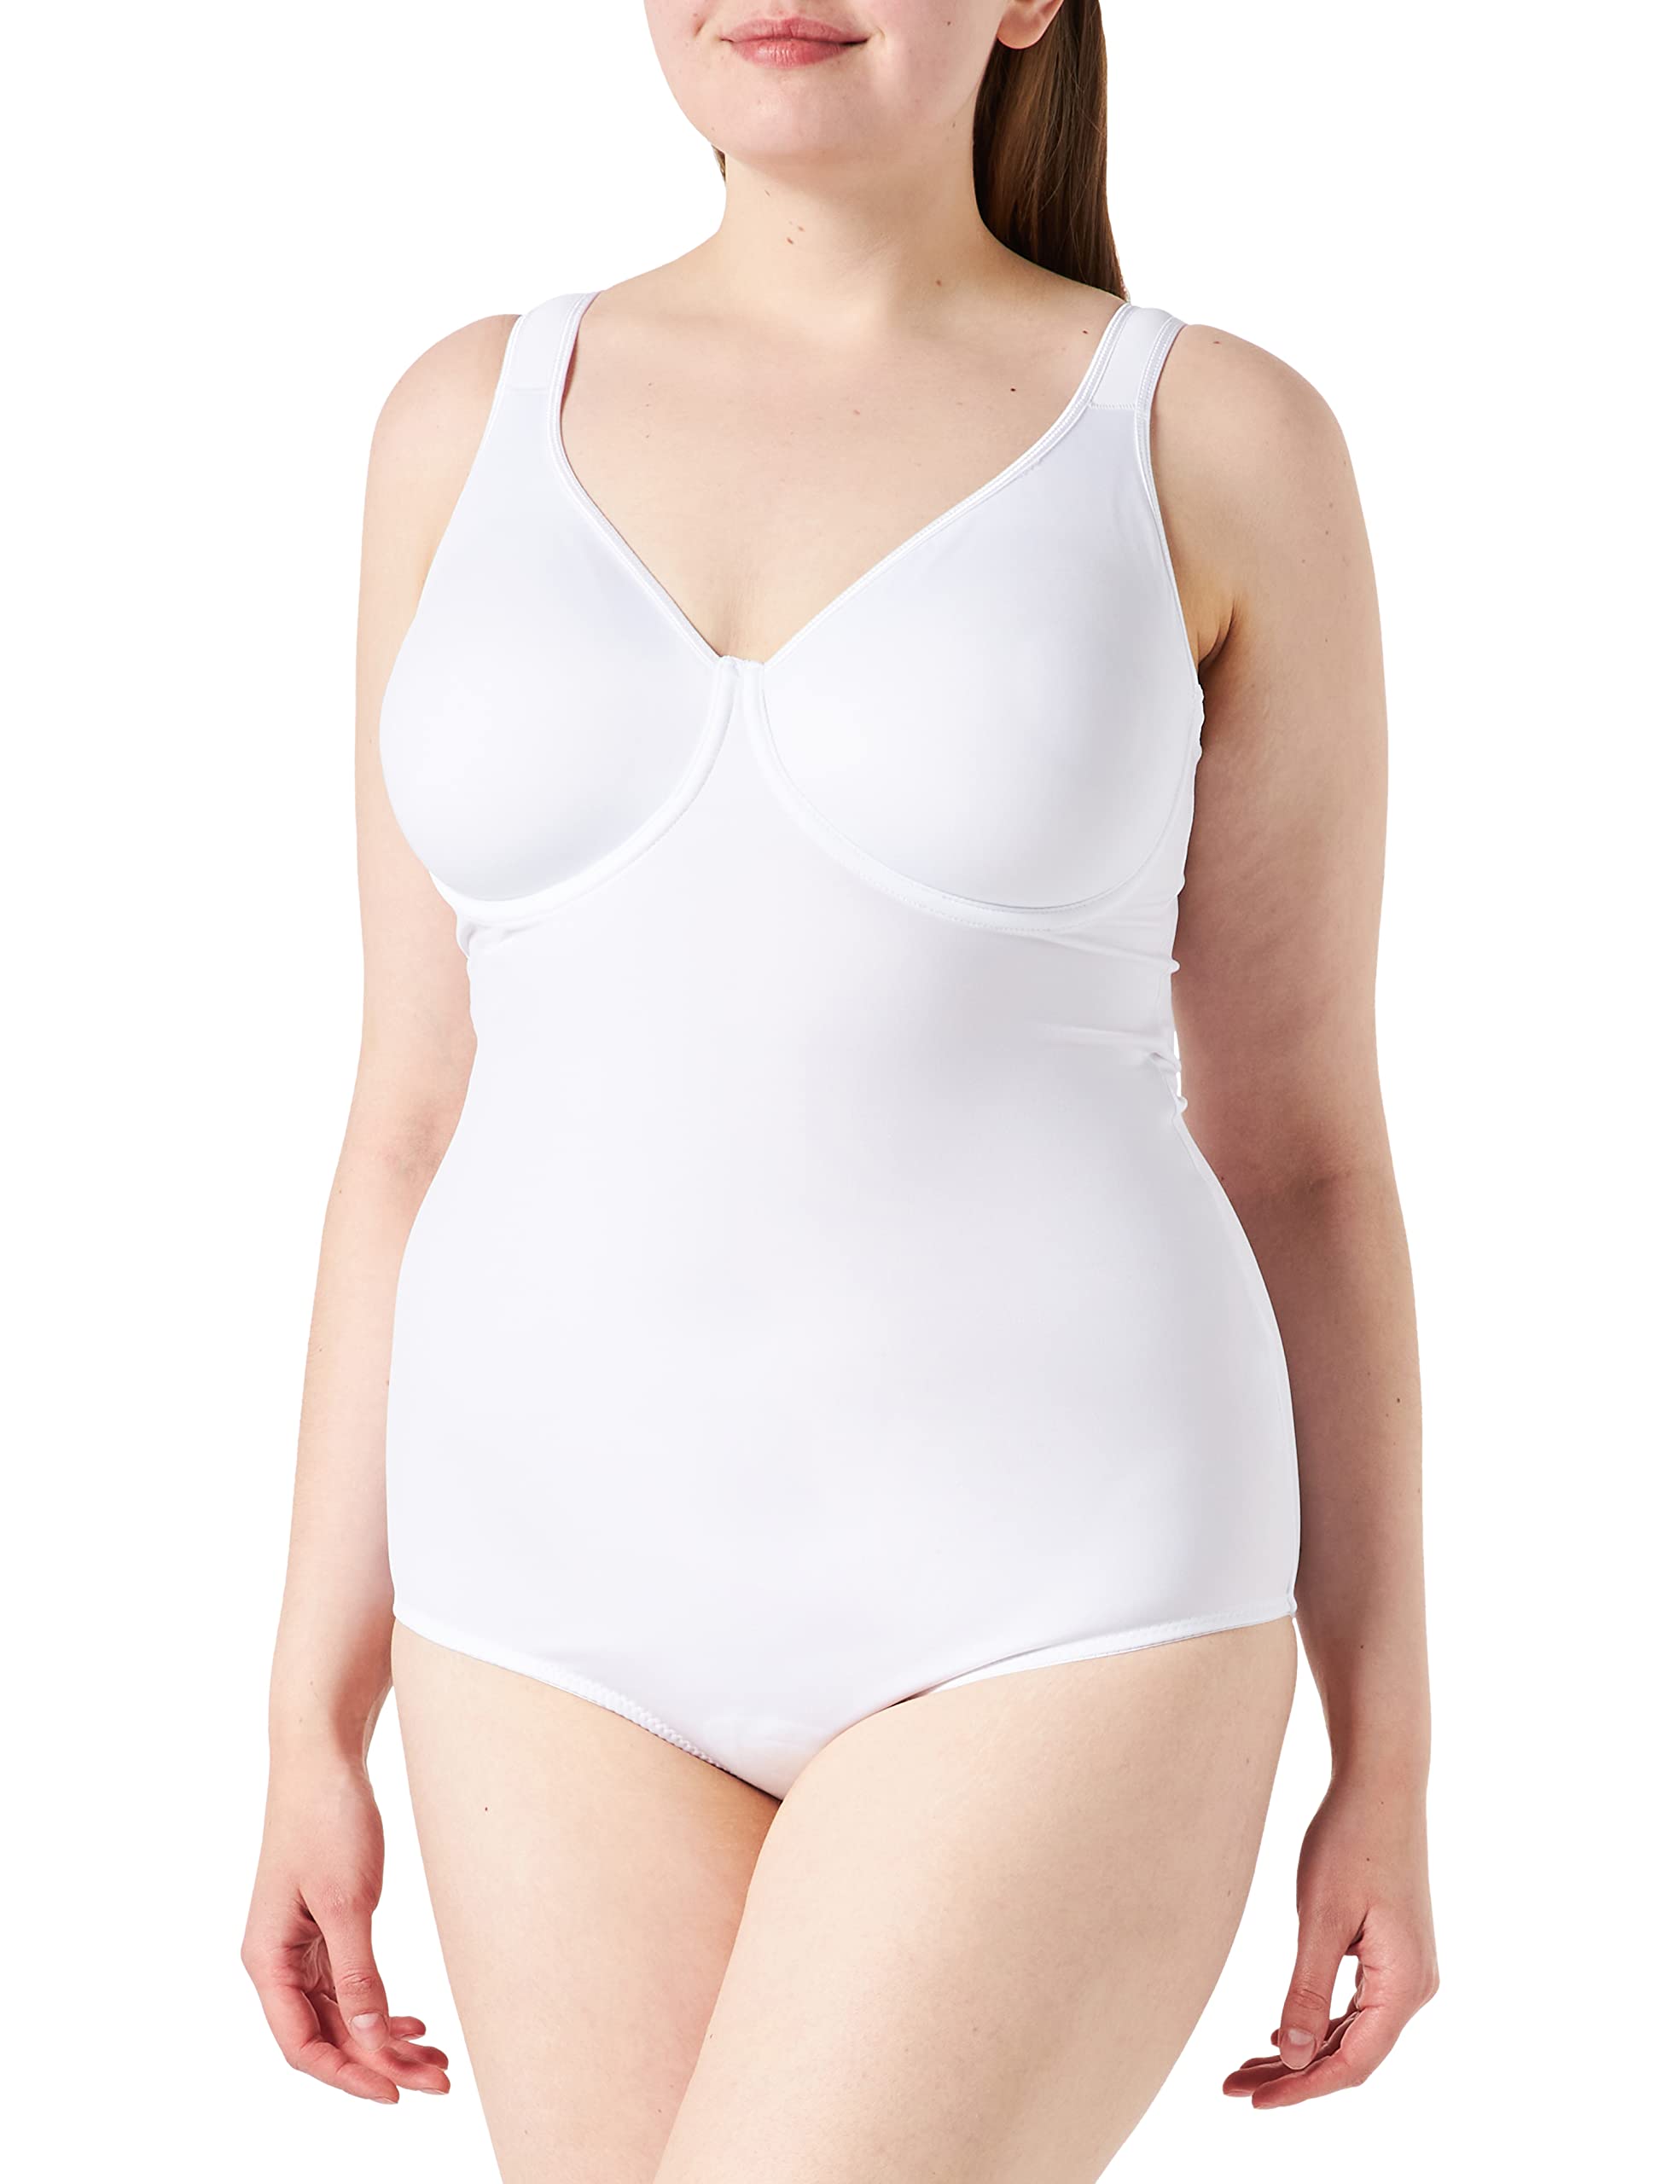 Sassa Damen Formender Body doppelt vorgeformt 00903, Einfarbig, Gr. 90D, Weiß (Weiß 00100)